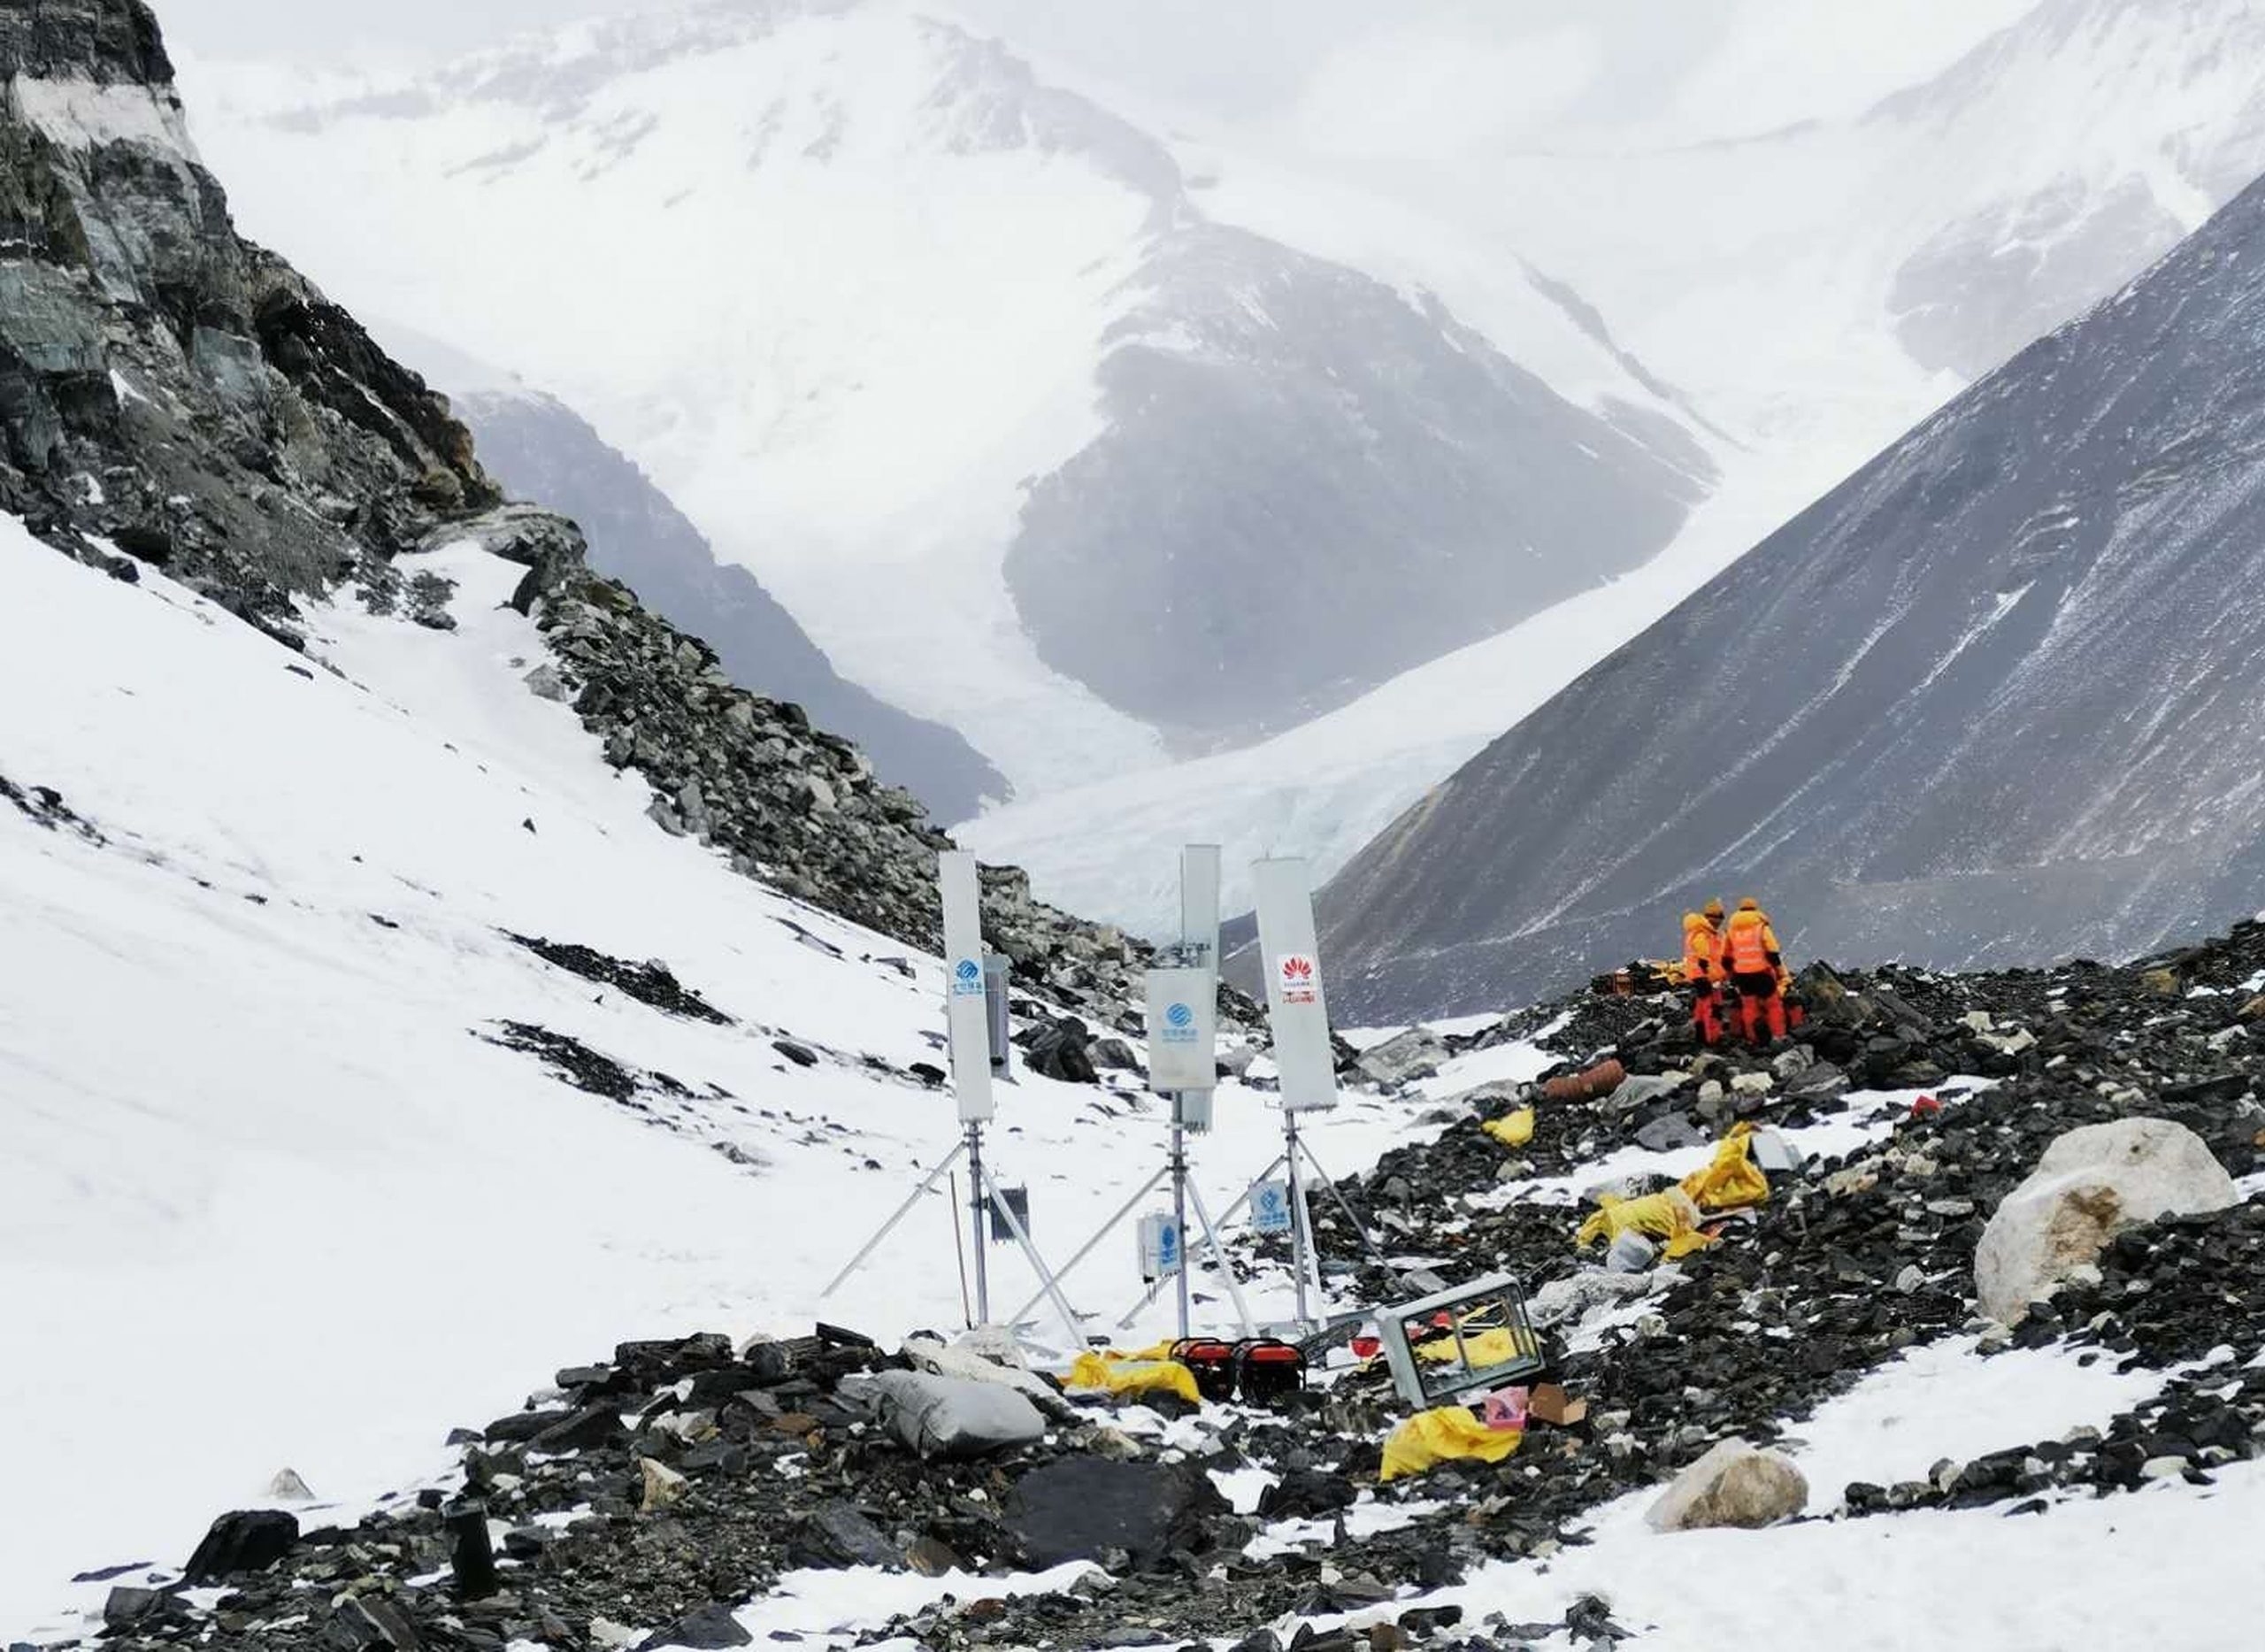 ไชน่า โมบายล์ และ หัวเว่ย ส่งมอบประสบการณ์ 5G ที่สูงที่สุดในโลก บนความสูงกว่า 6,500 เมตร เผยศักยภาพในการส่งมอบเครือข่าย ณ